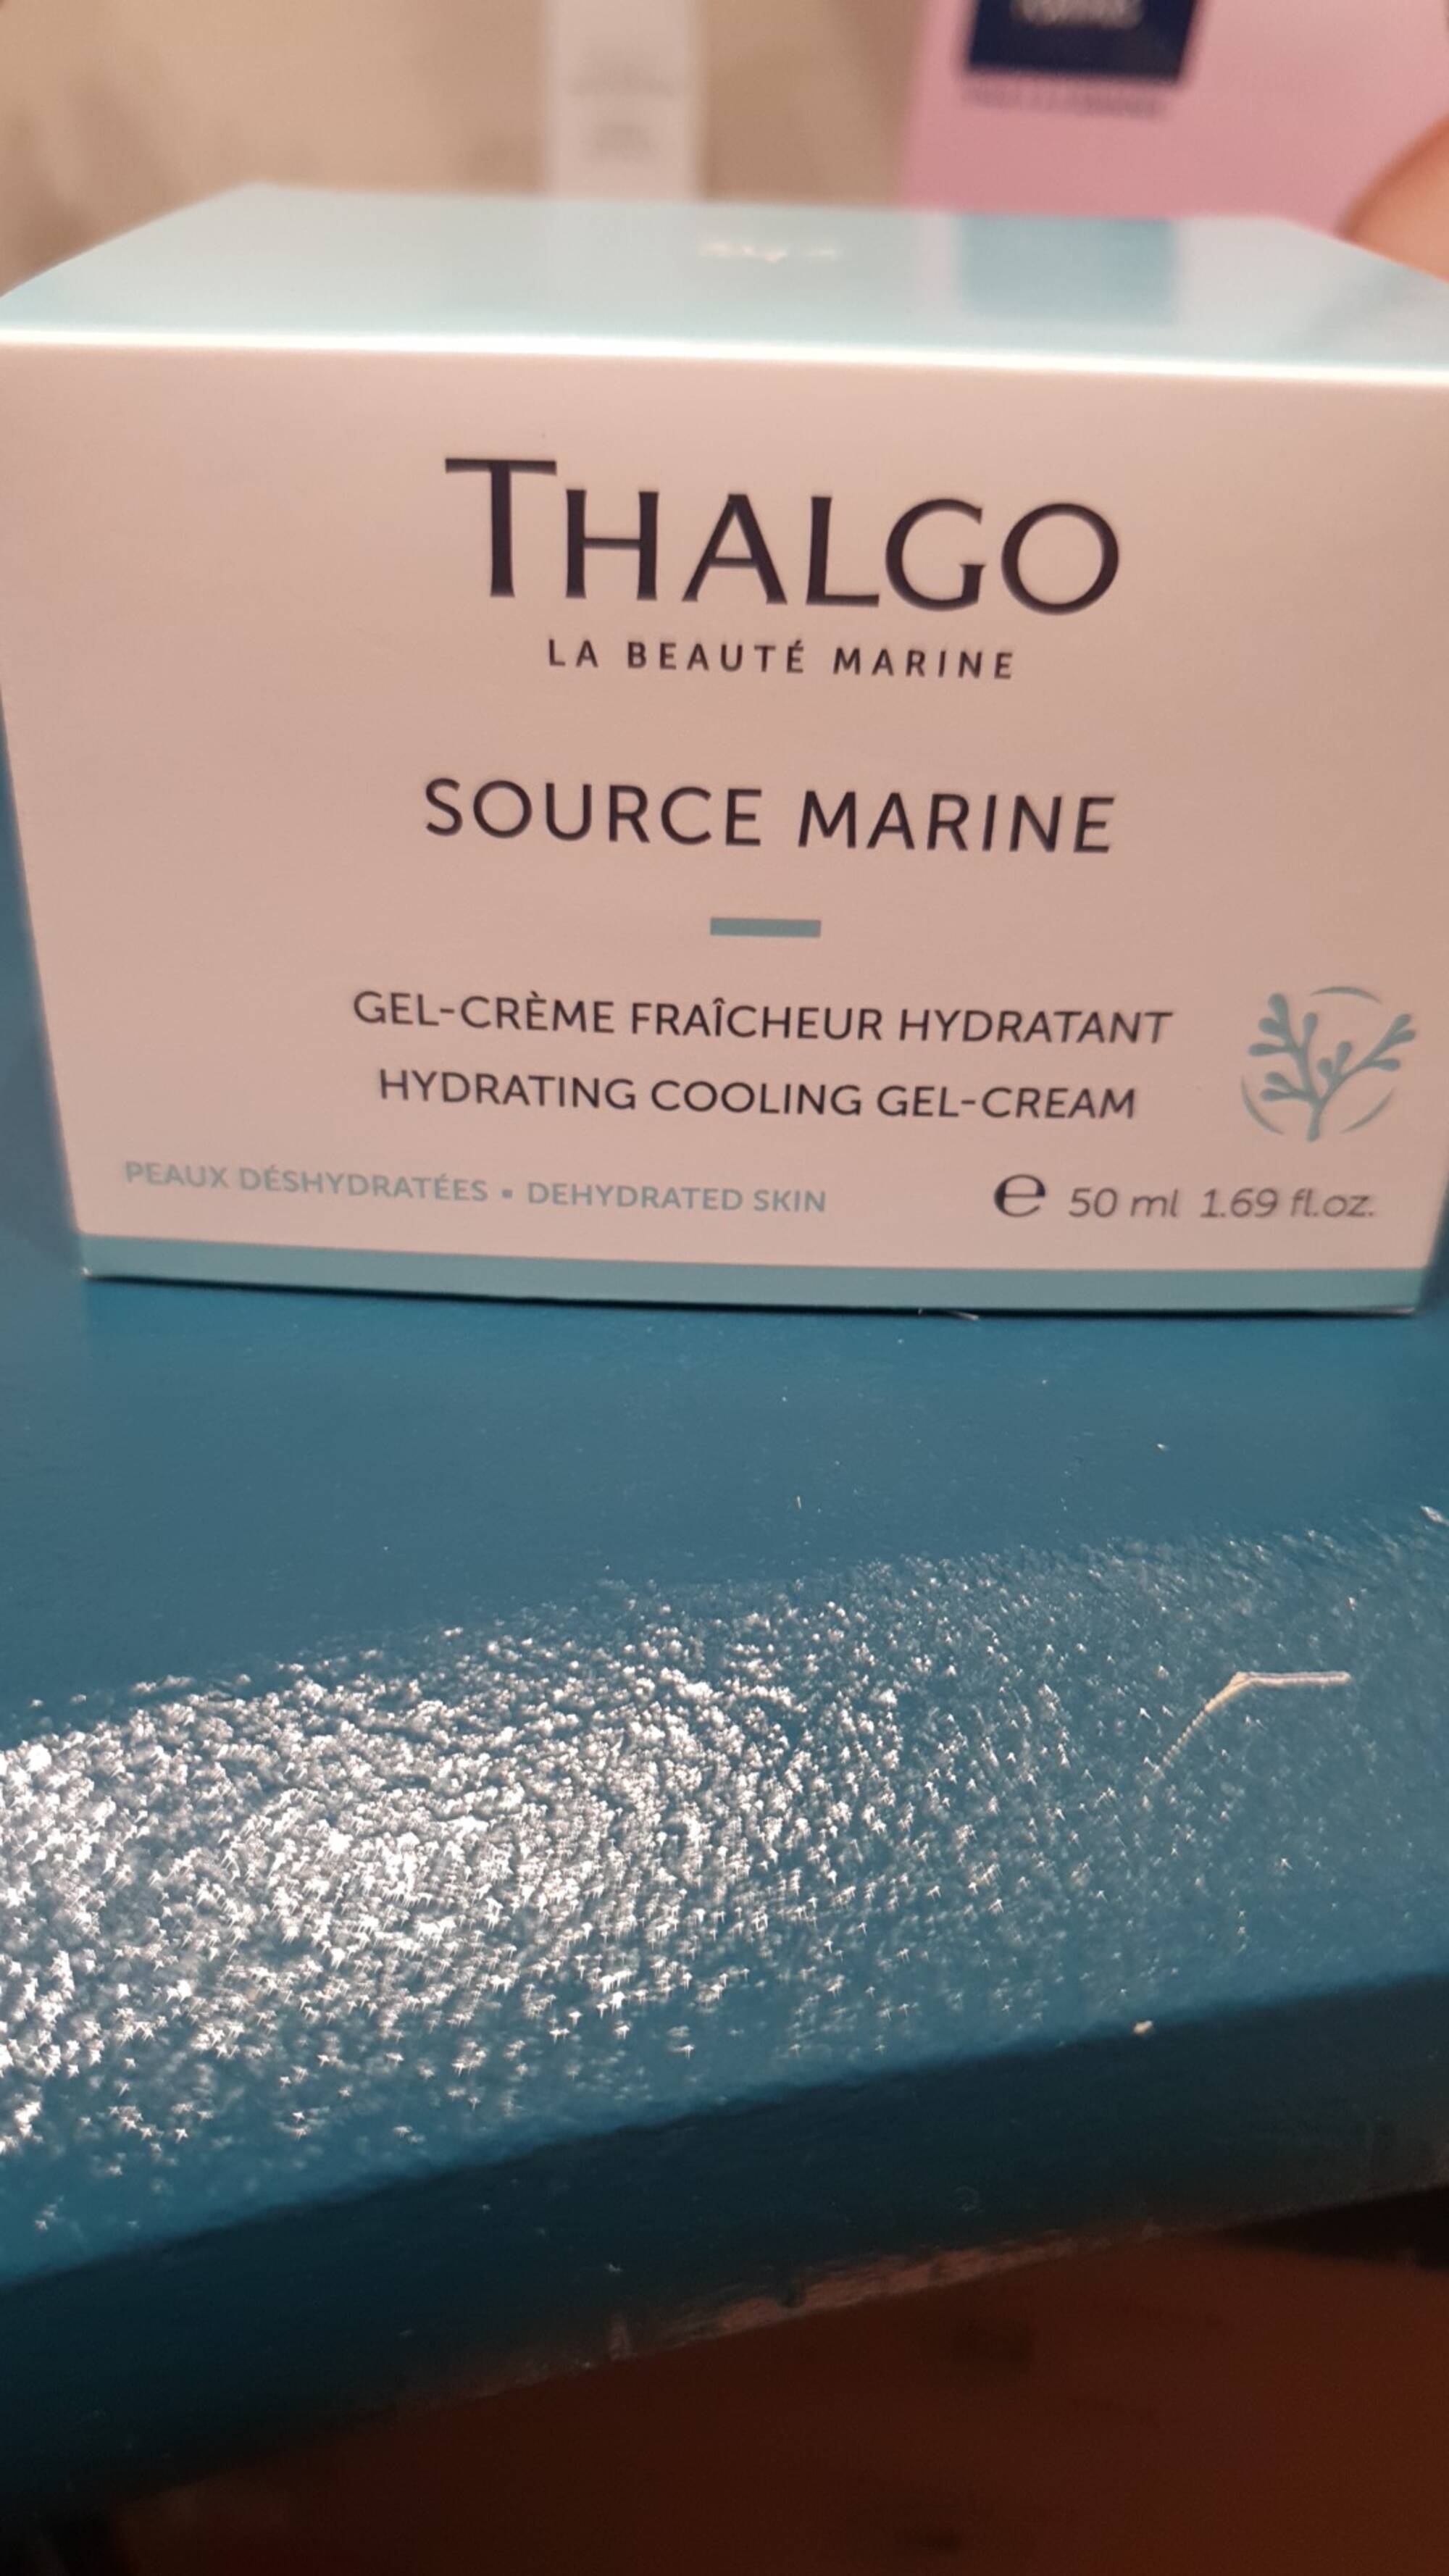 THALGO - Source Marine - Gel-crème fraîcheur hydratant